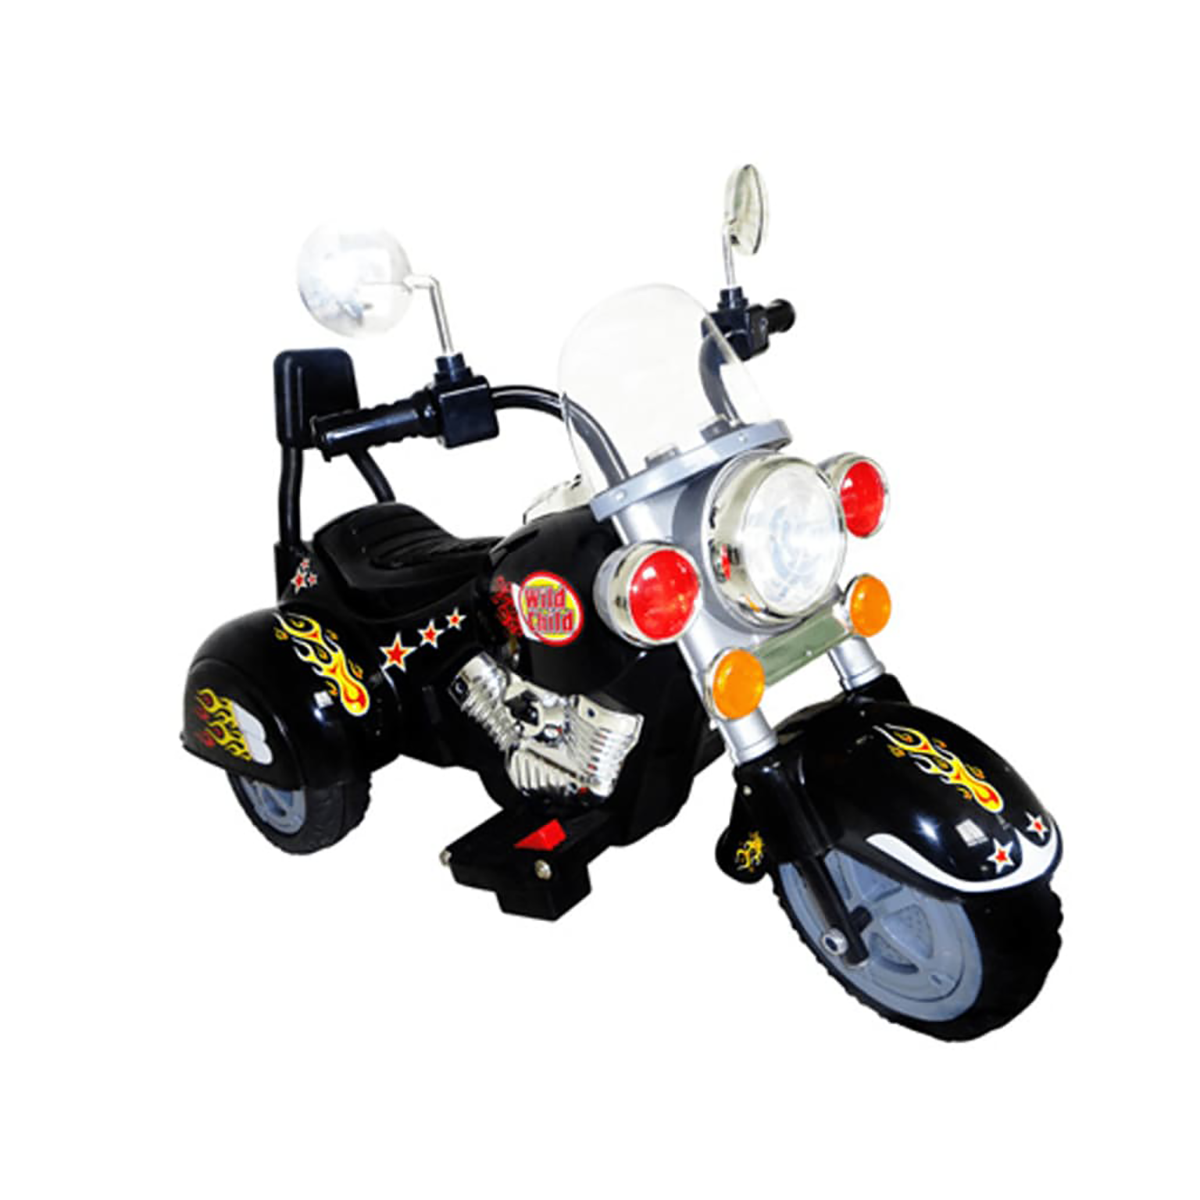 VIDAXL Motorrad Chopper Kinder Kinderfahrzeug